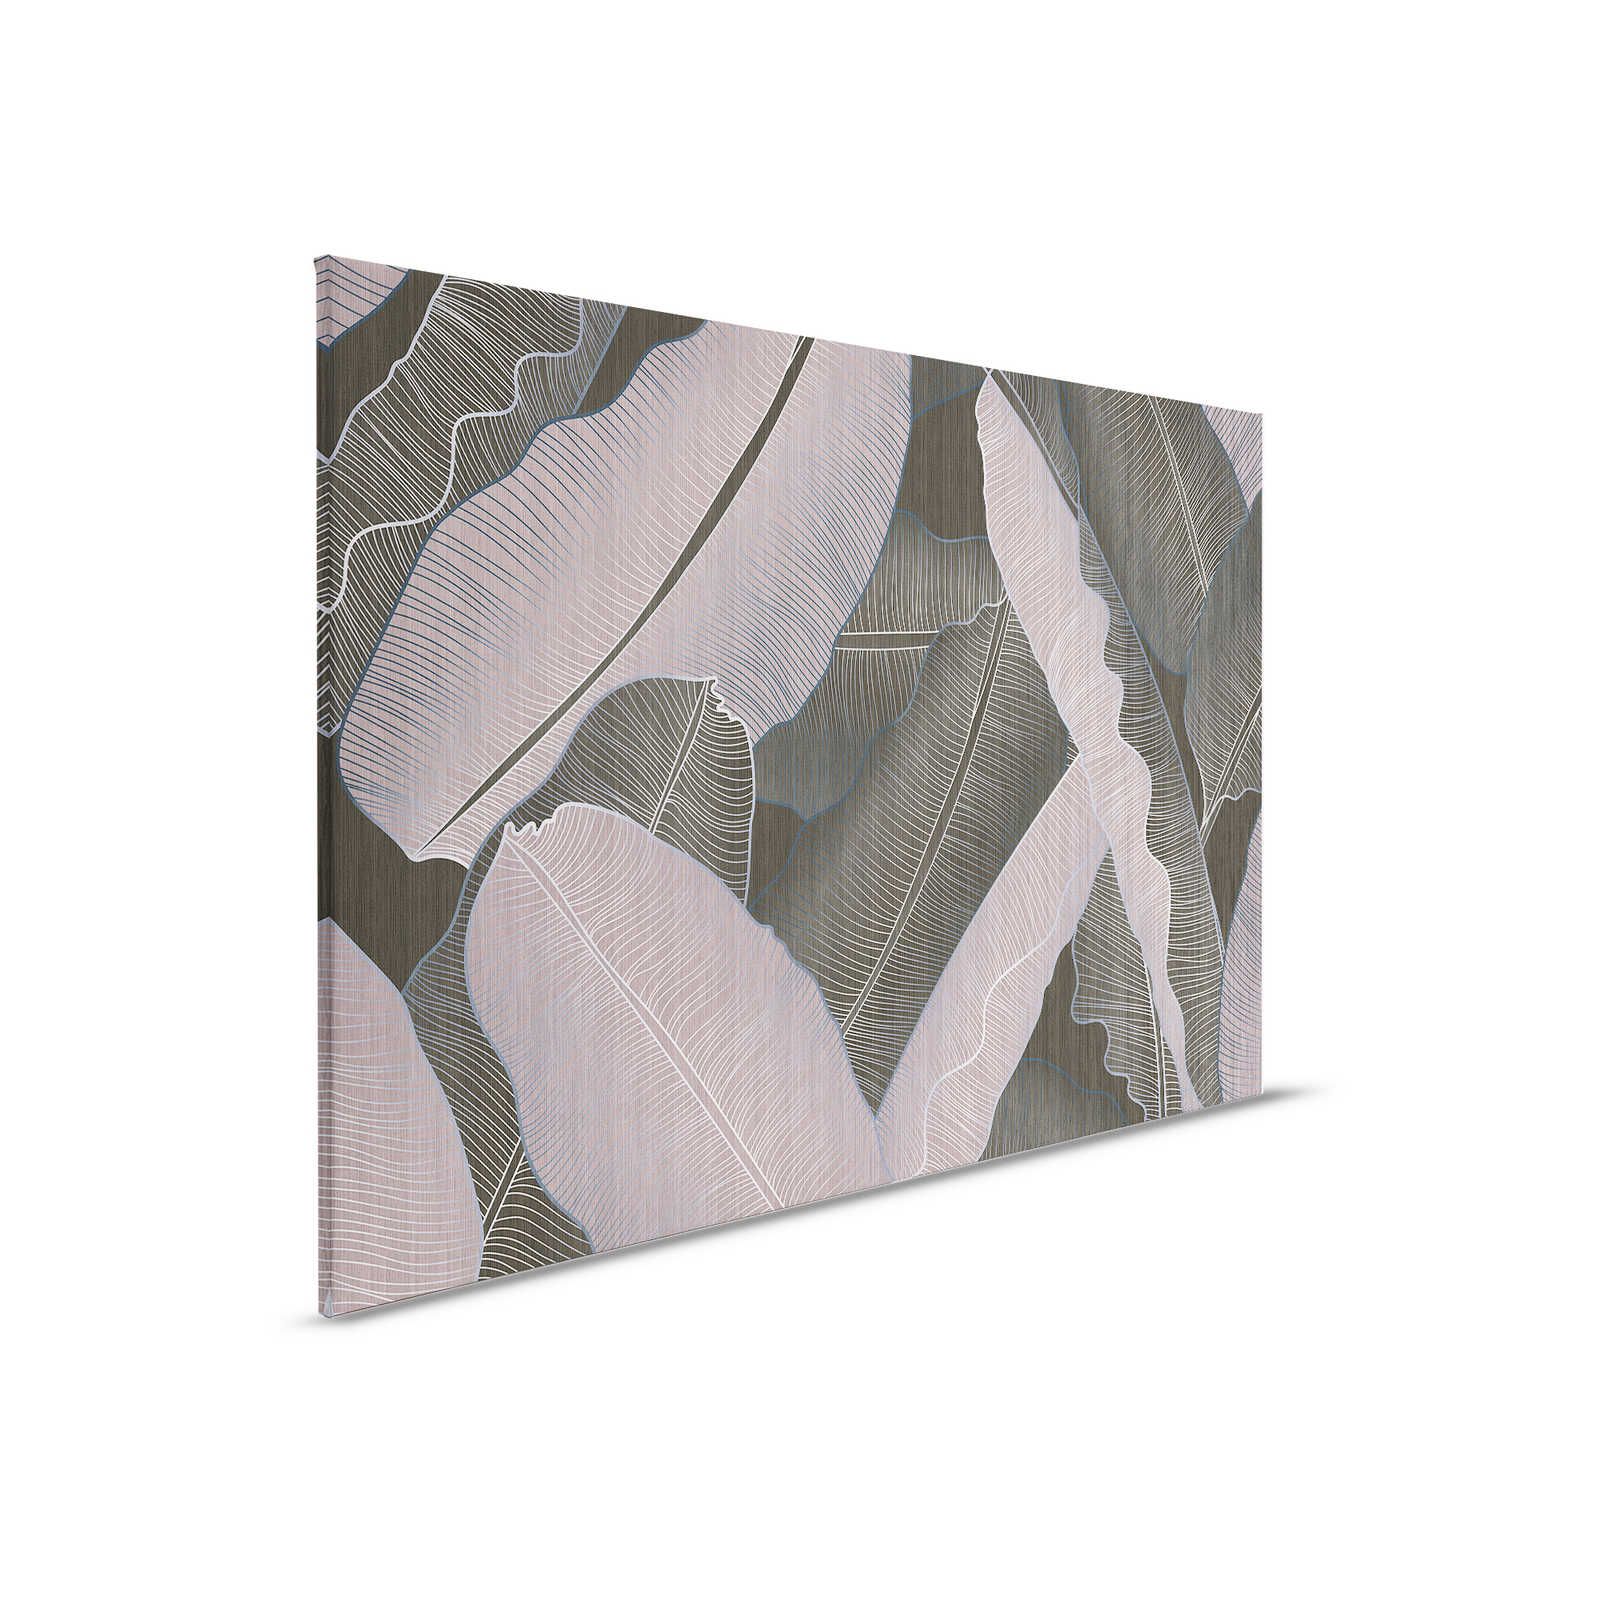 Sotto la copertura 2 - Pittura su tela con foglie di palma in stile disegno grigio e rosa - 0,90 m x 0,60 m
